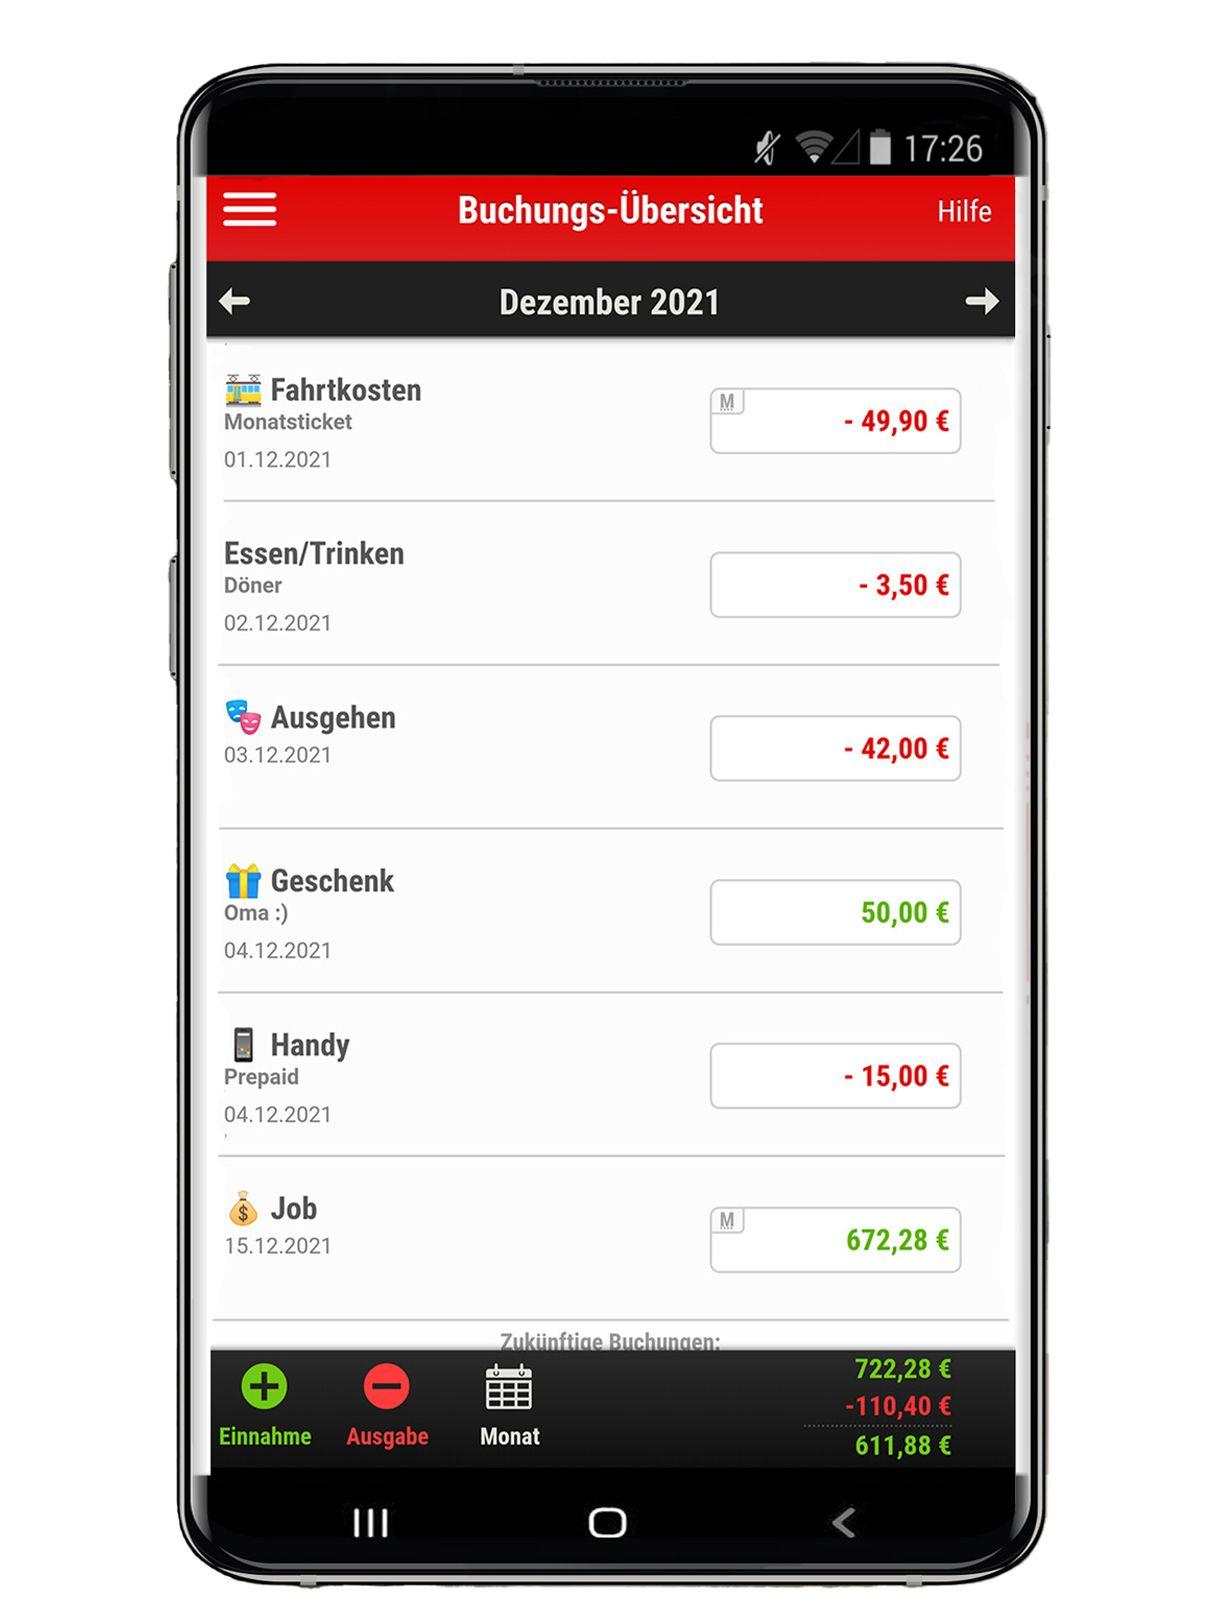 Ein transparent hinterlegtes Mock-Up von einem Smartphone-Bildschirm, der die Buchungsübersicht der Finanzchecker App der Sparkassen abbildet. Auf dem Bildschirm sind die Zahlungsein- und Ausgänge aufgeführt.